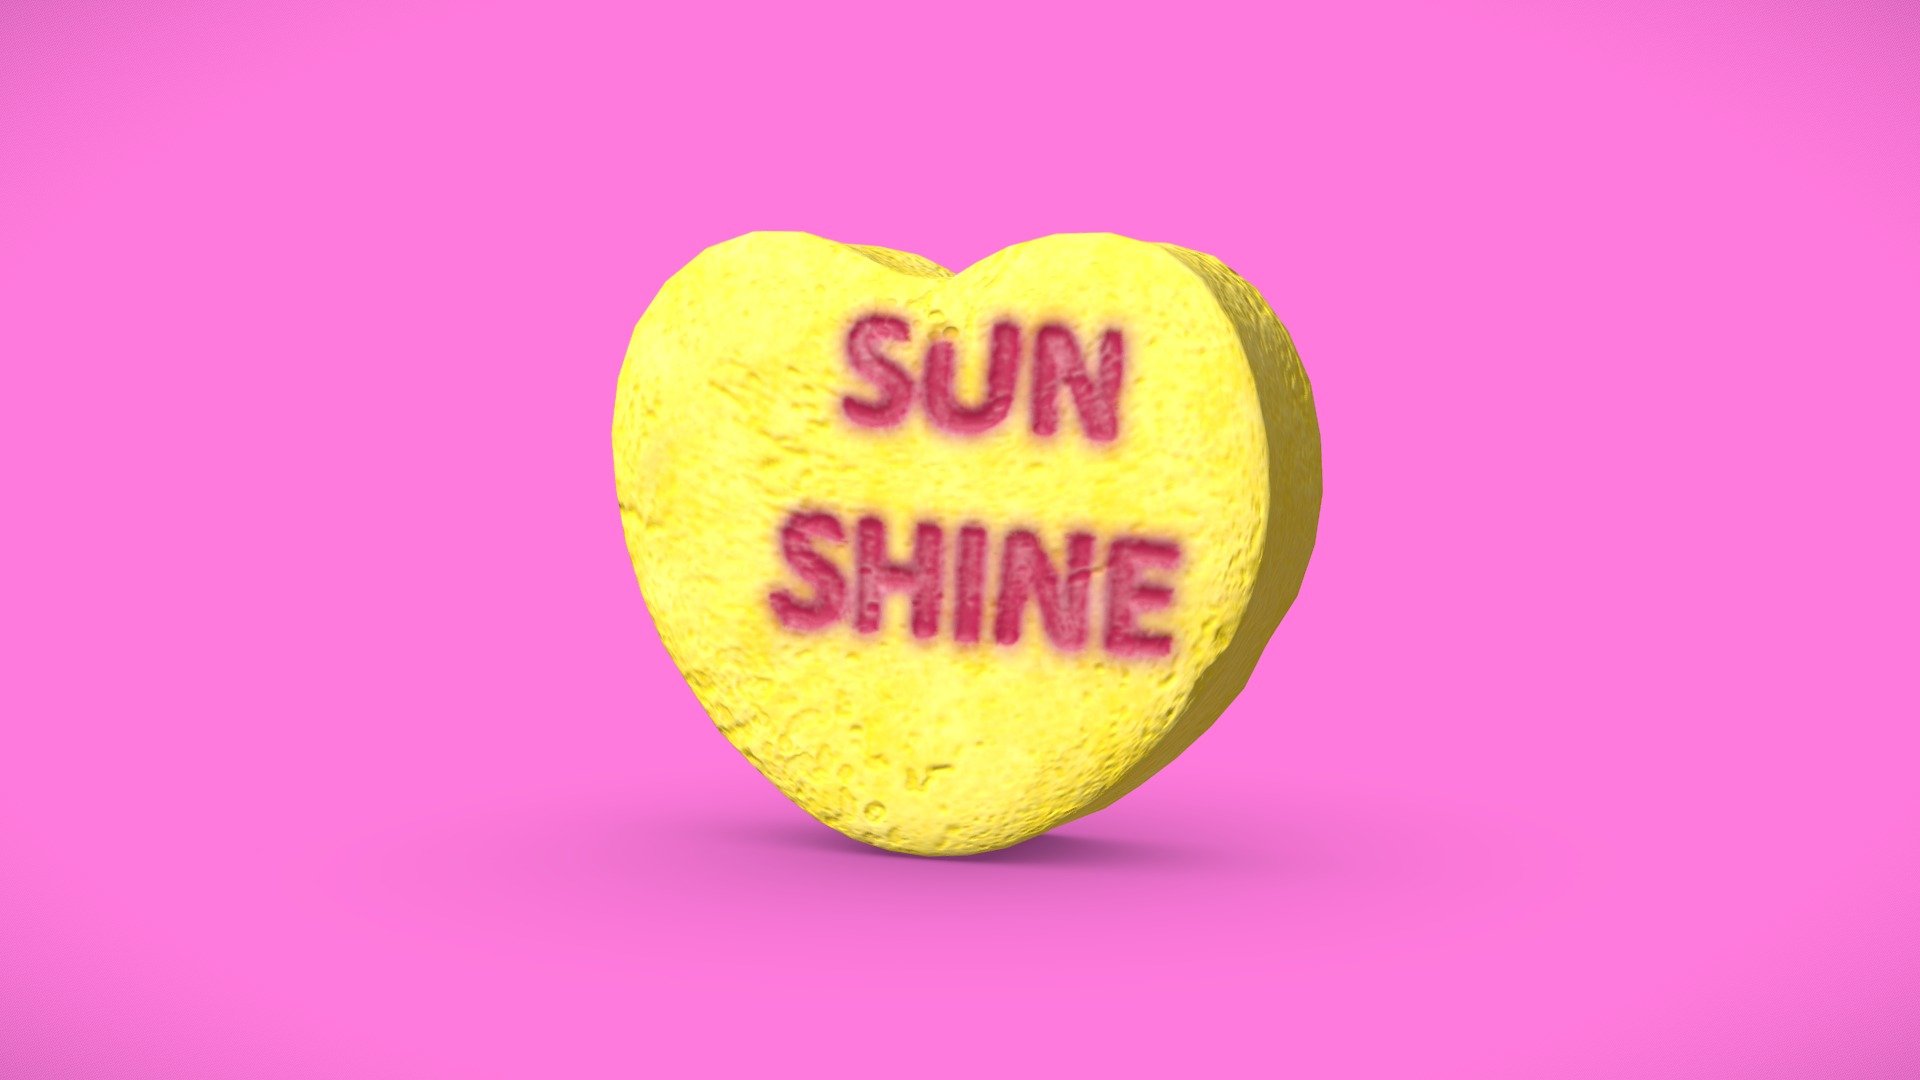 Heart Candy - Sunshine